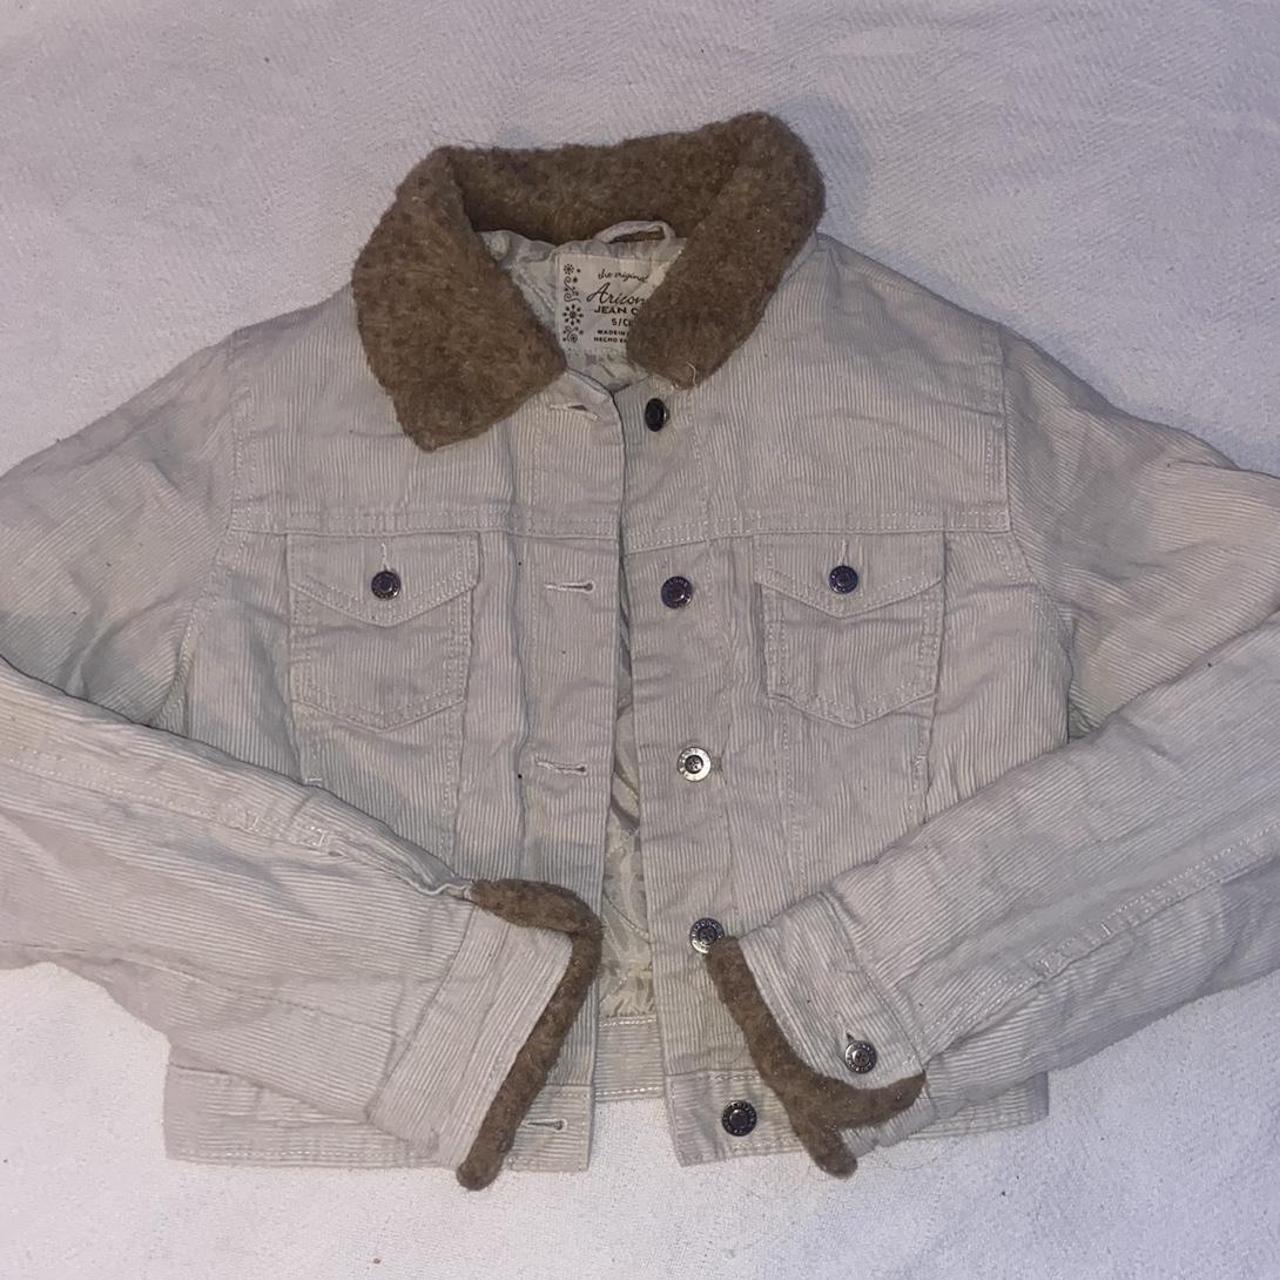 Product Image 1 - Arizona jeans jacket. Corduroy jacket